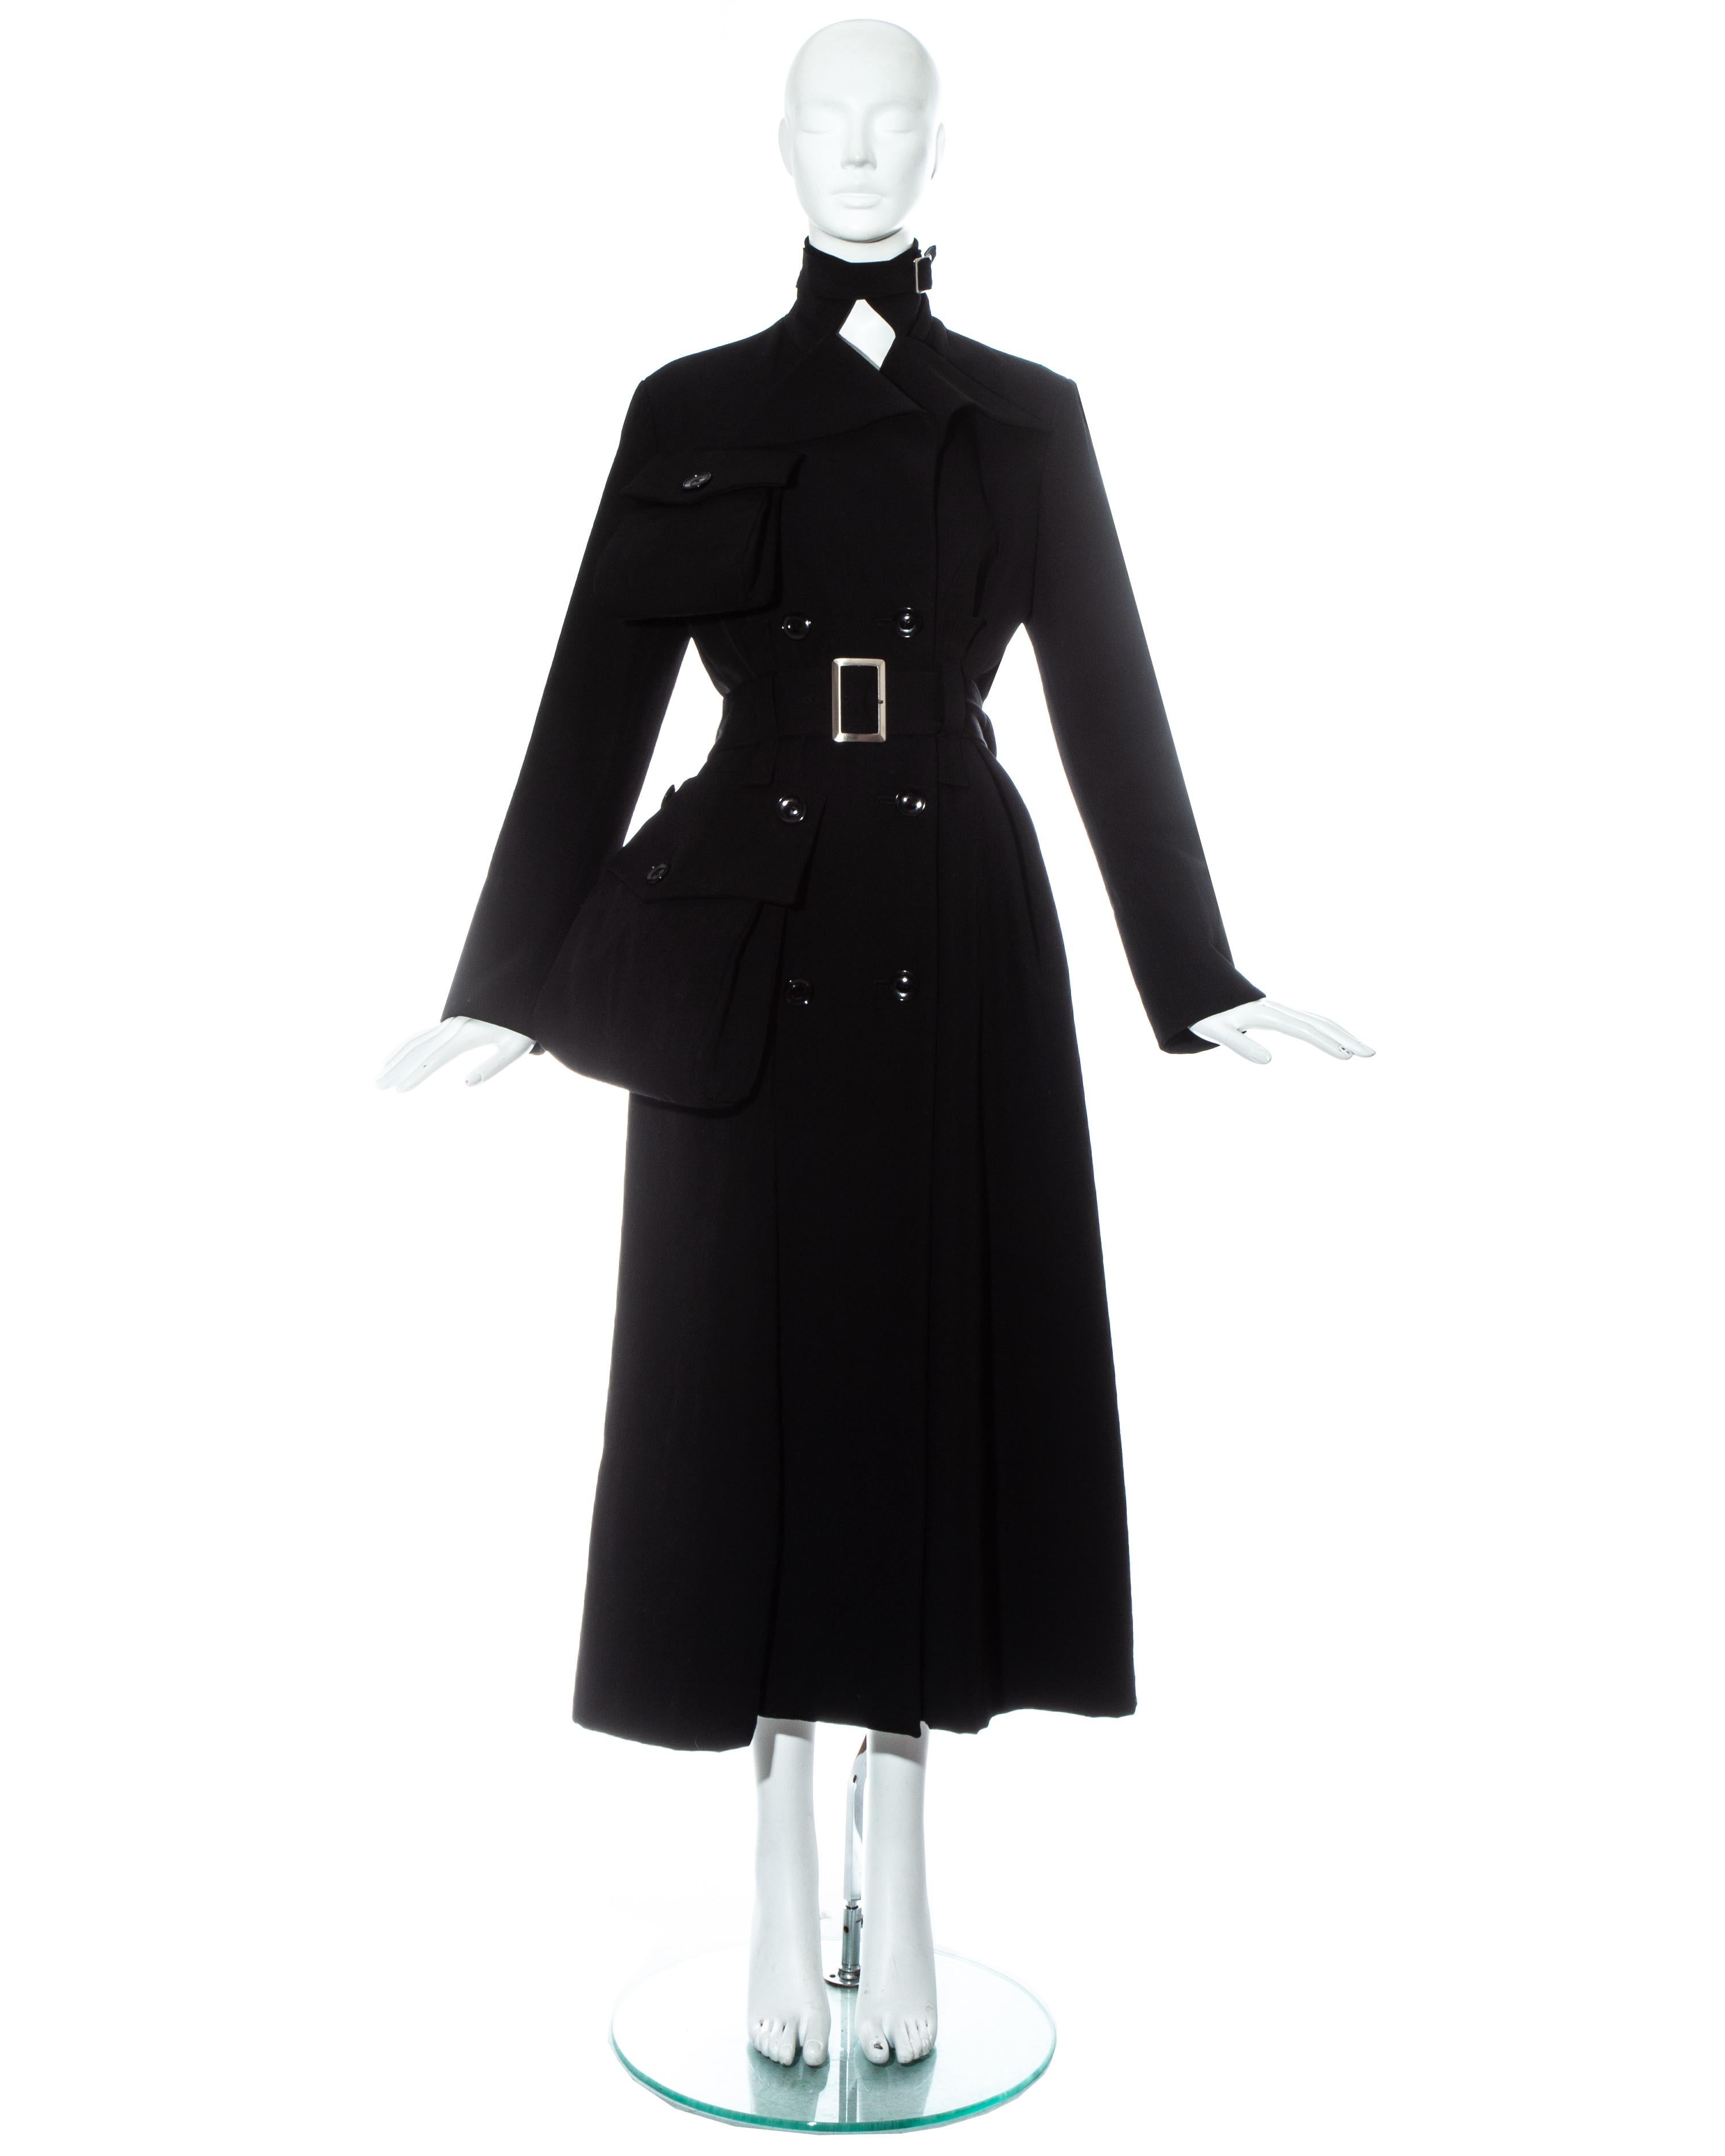 Yohji Yamamoto ; manteau maxi en gabardine de laine noire avec poches extérieures exagérées à rabat et fermetures à boucle de ceinture à la taille et au cou.  

 Automne-Hiver 2004   

- Le même manteau se trouve dans la collection permanente des